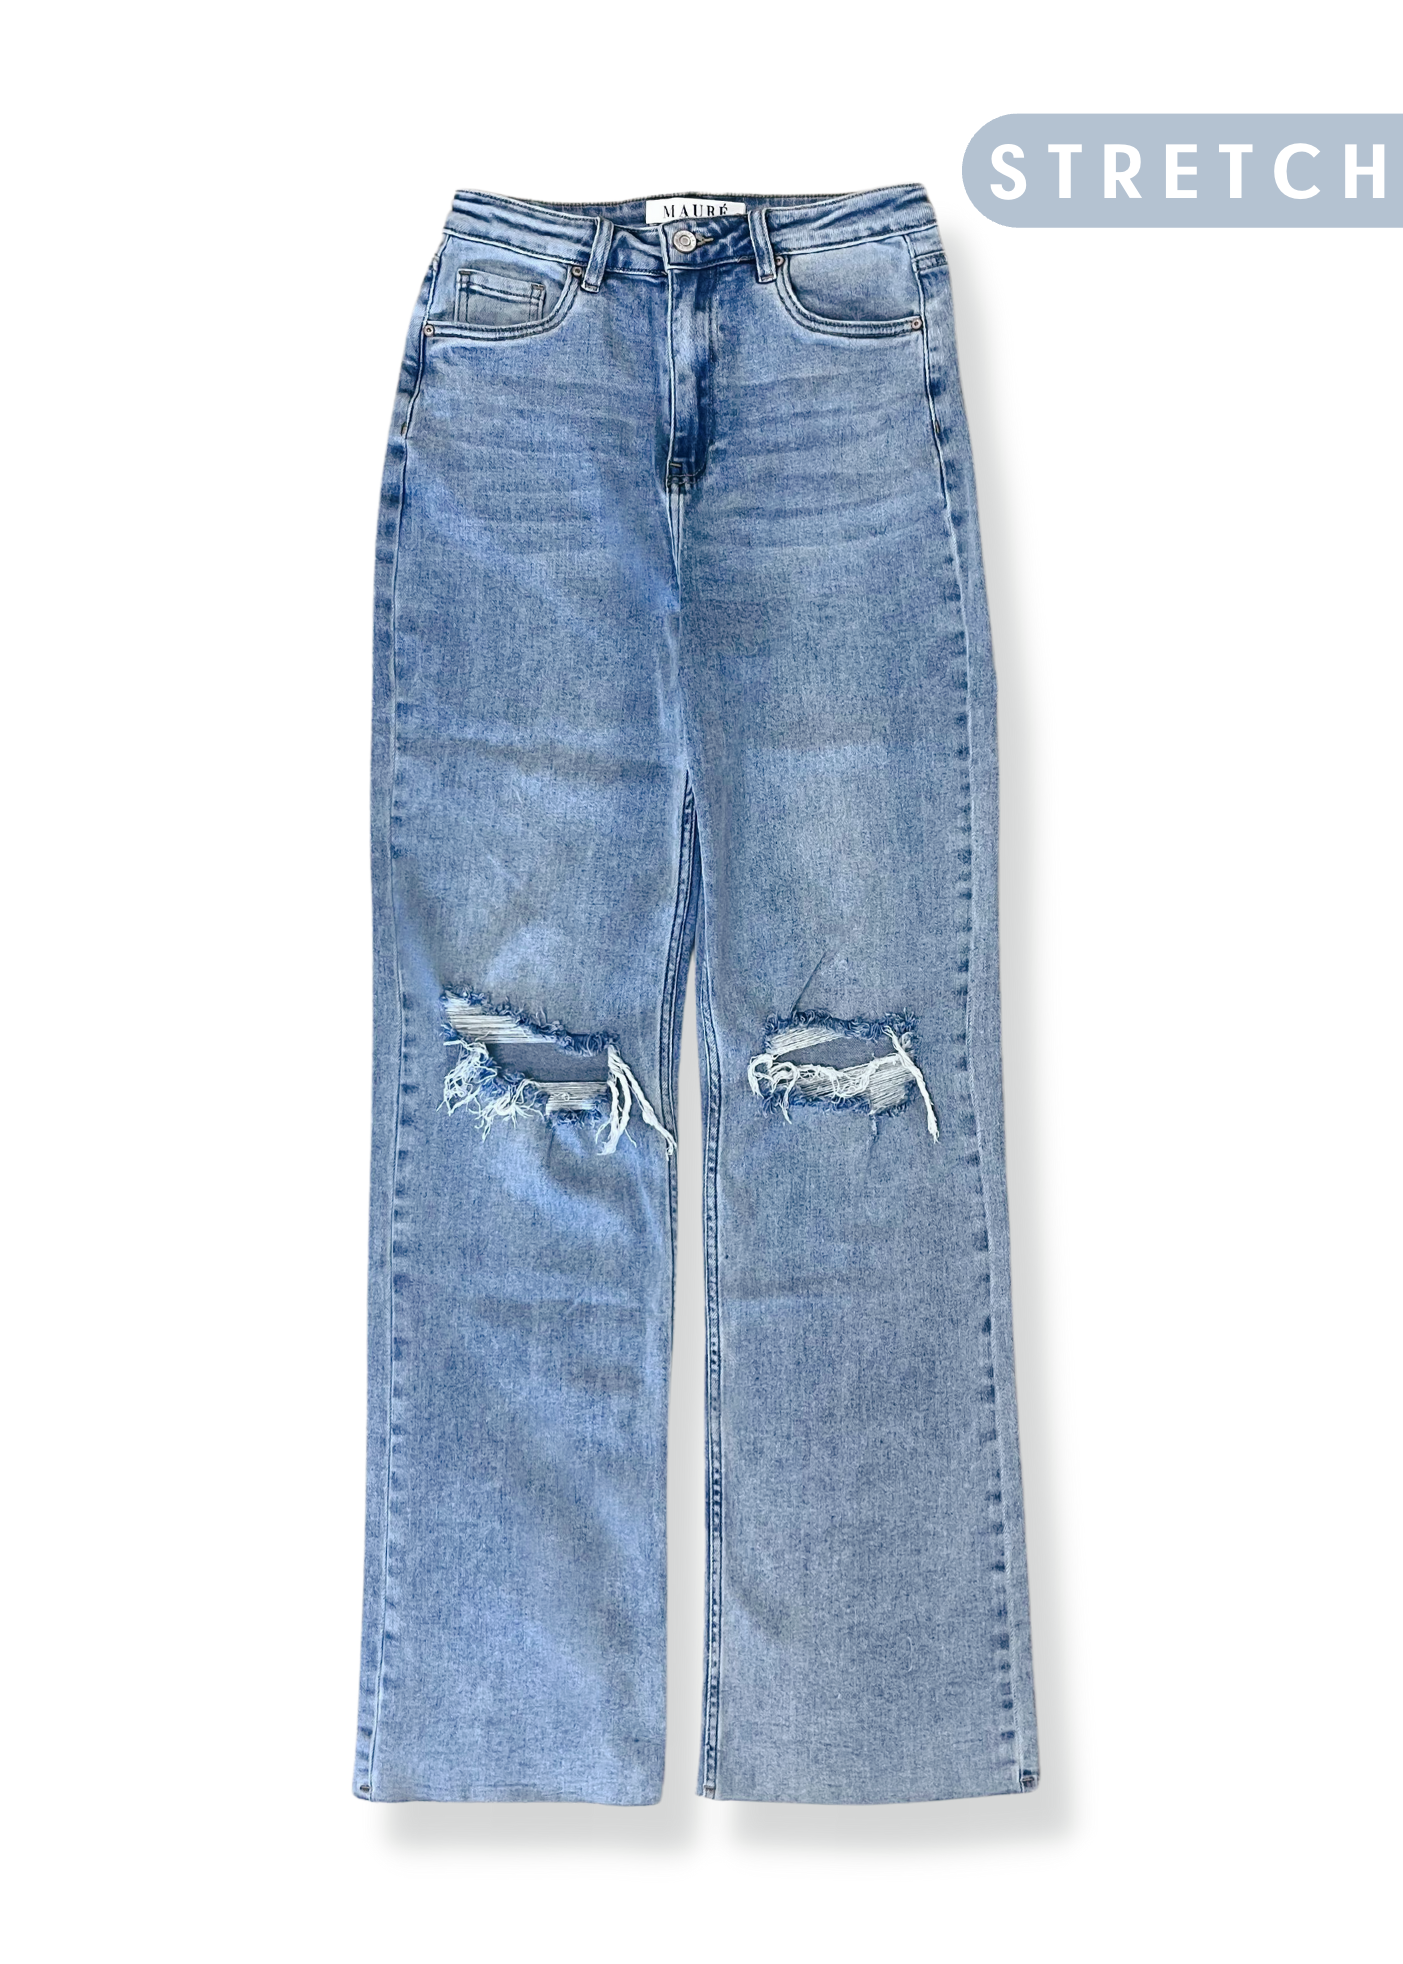 High waist straight leg jeans dark washed blue